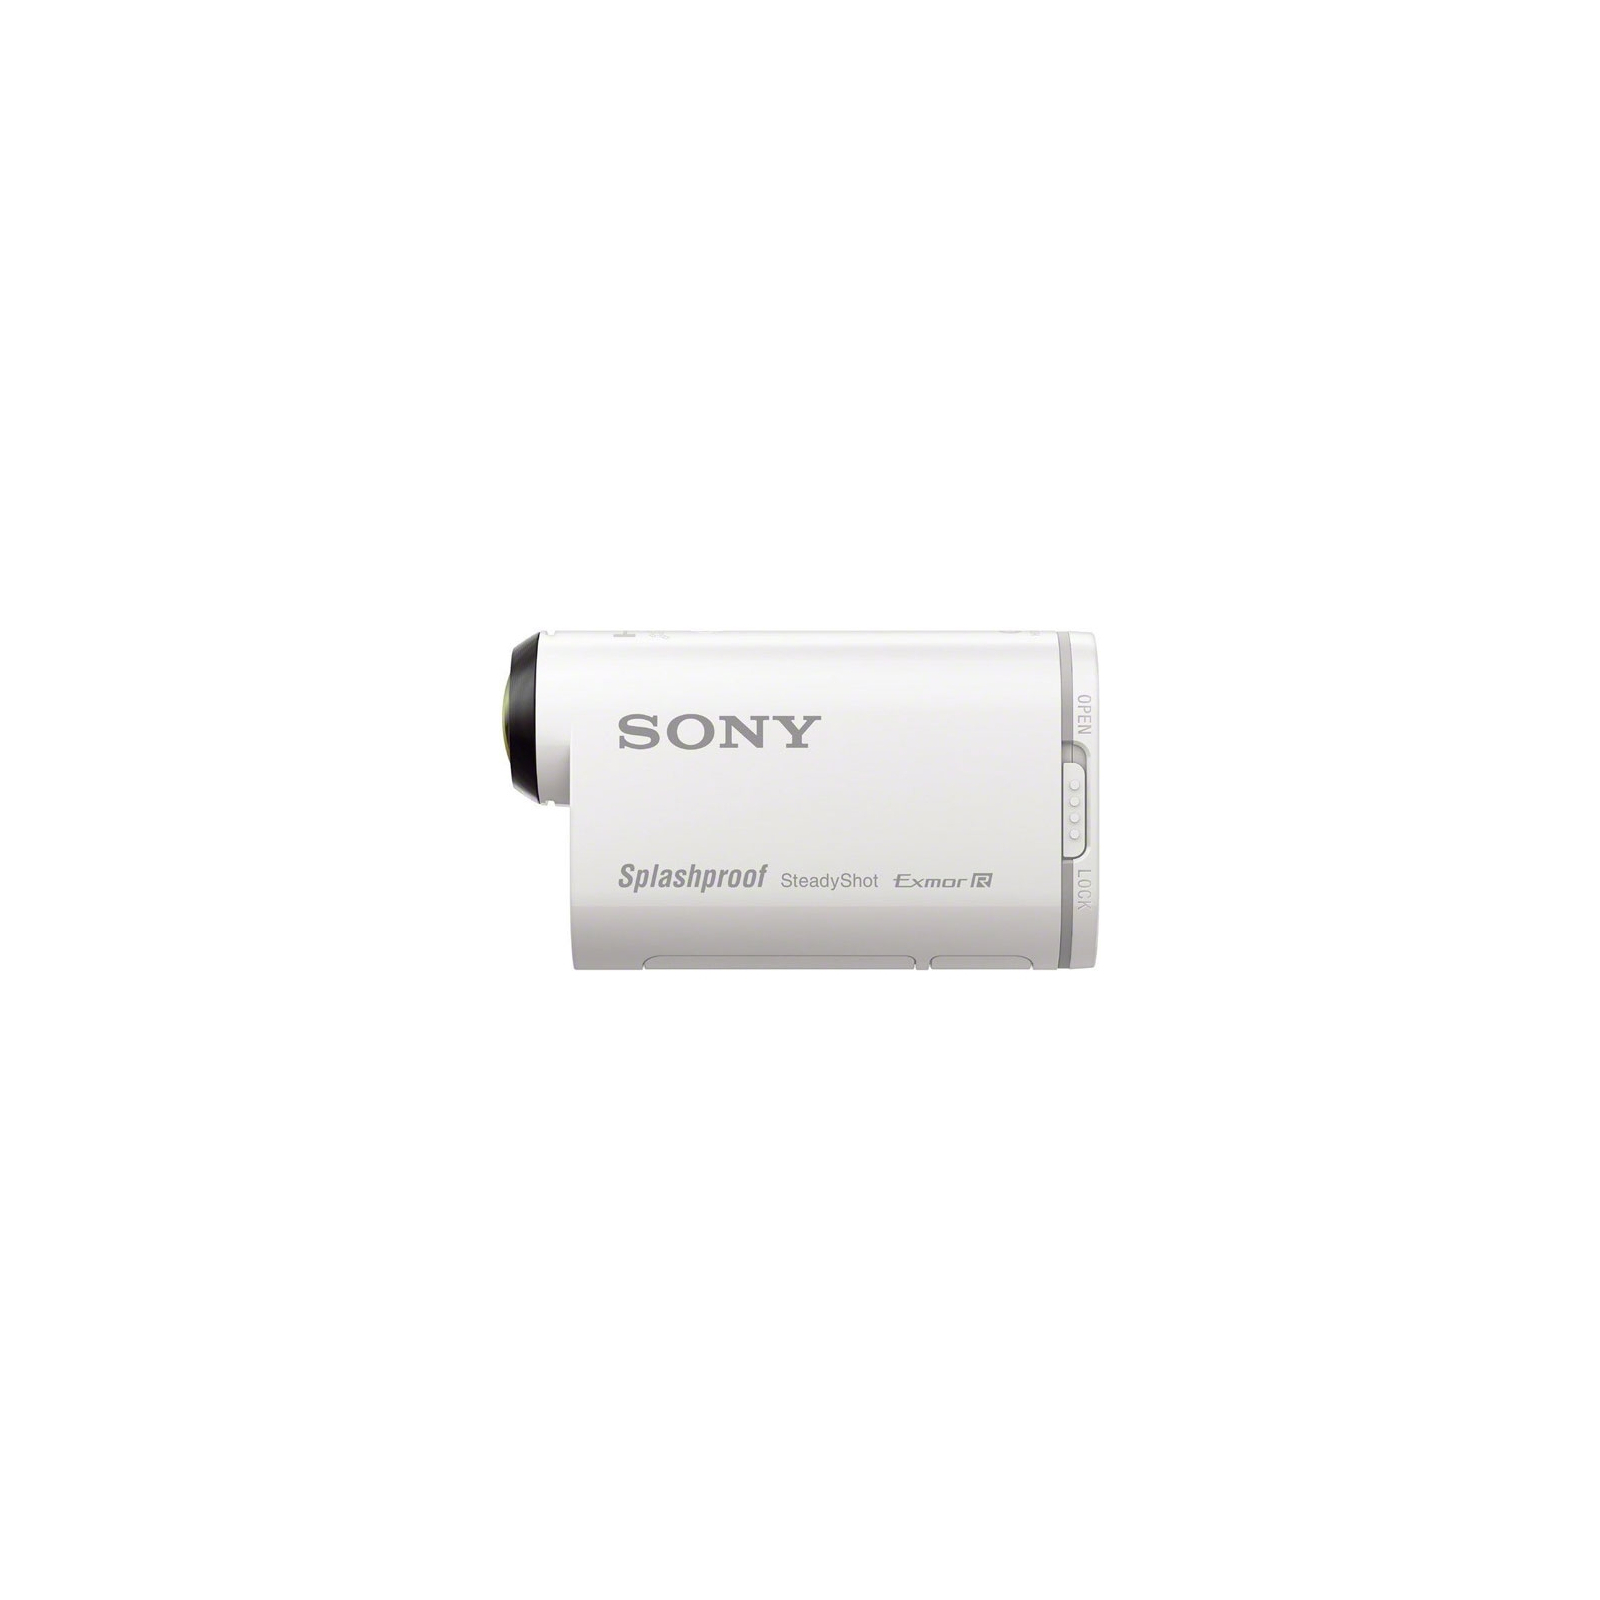 Екшн-камера Sony HDR-AS200 c пультом д/у RM-LVR2 и набором креплений (HDRAS200VB.AU2) зображення 2